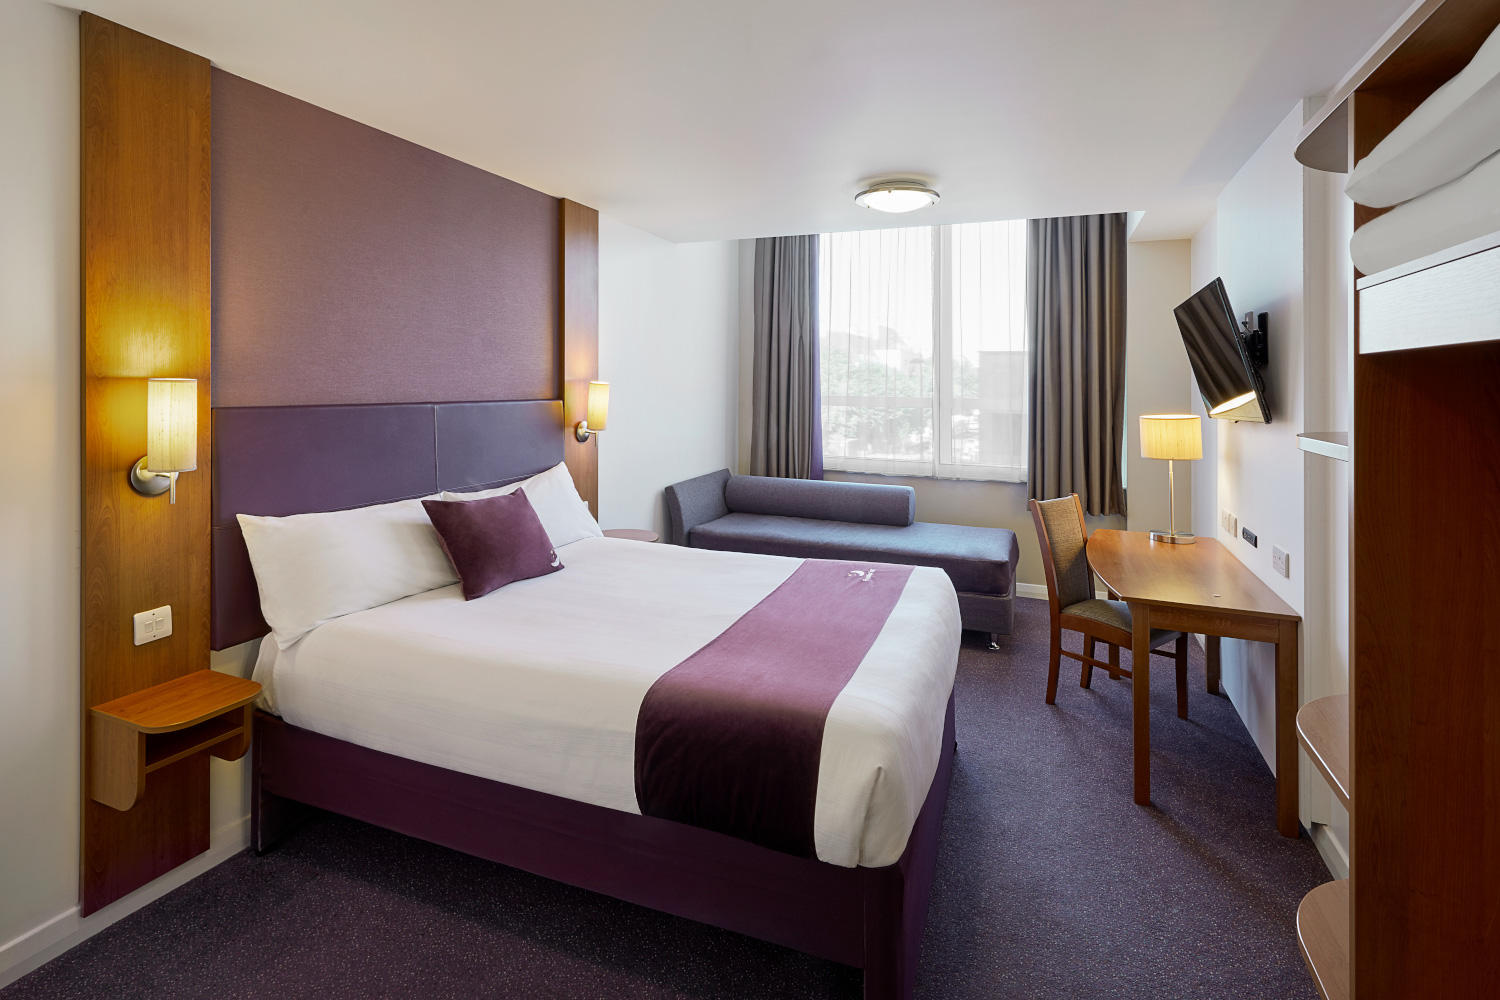 Premier Inn bedroom Premier Inn Glenrothes hotel Glenrothes 03330 031673